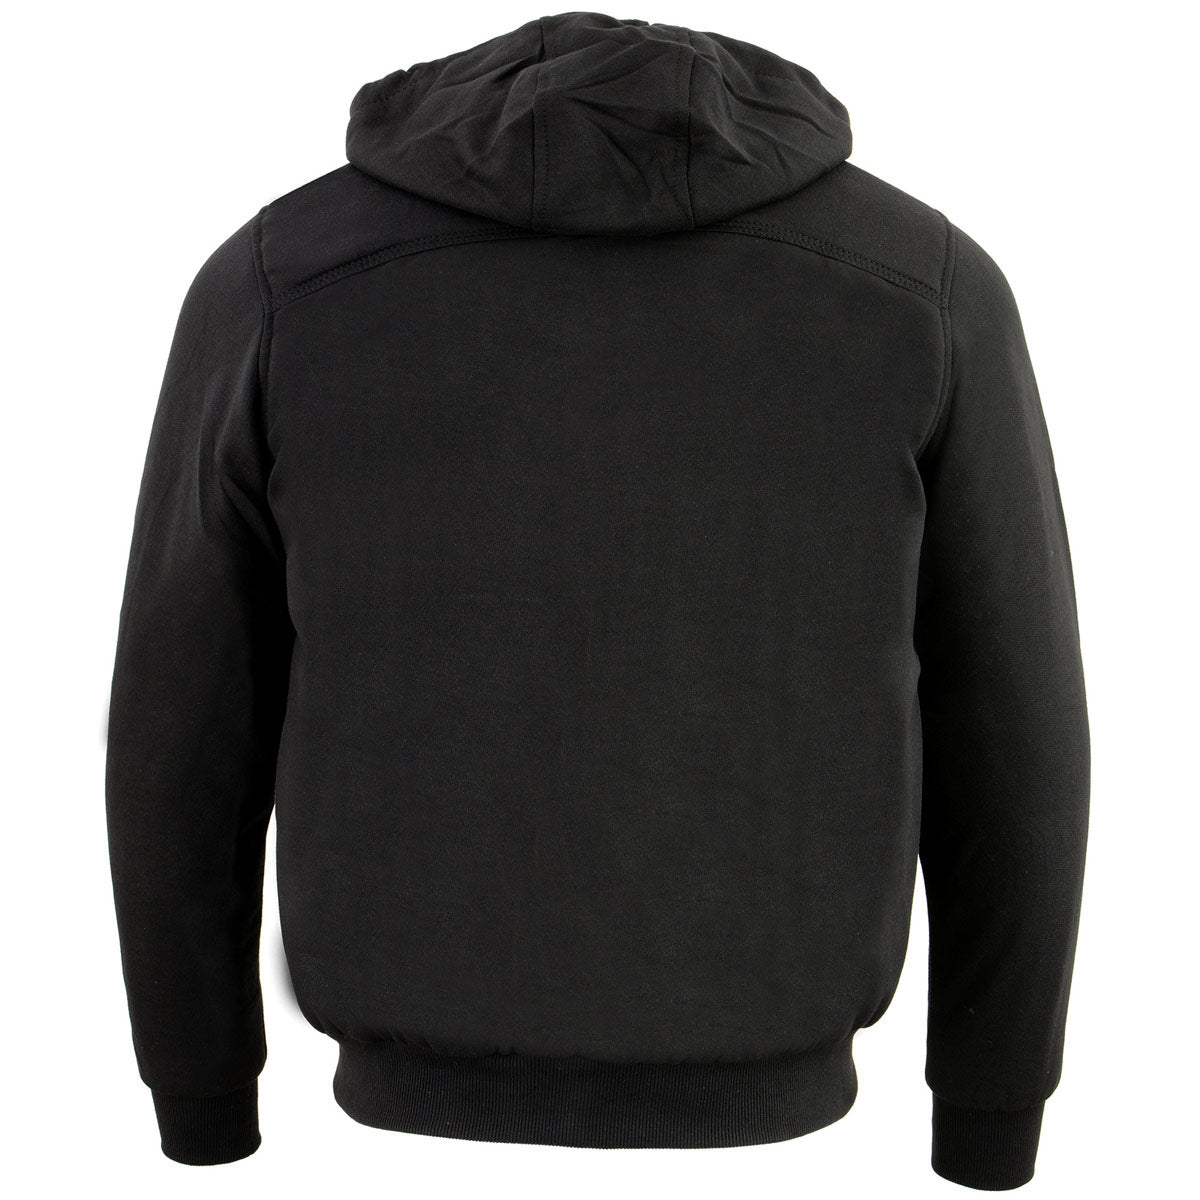 Nexgen Heat NXM1713SET Men's “Fiery’’ Heated Hoodie- Black Zipper Front Sweatshirt Jacket for Winter w/Battery Pack